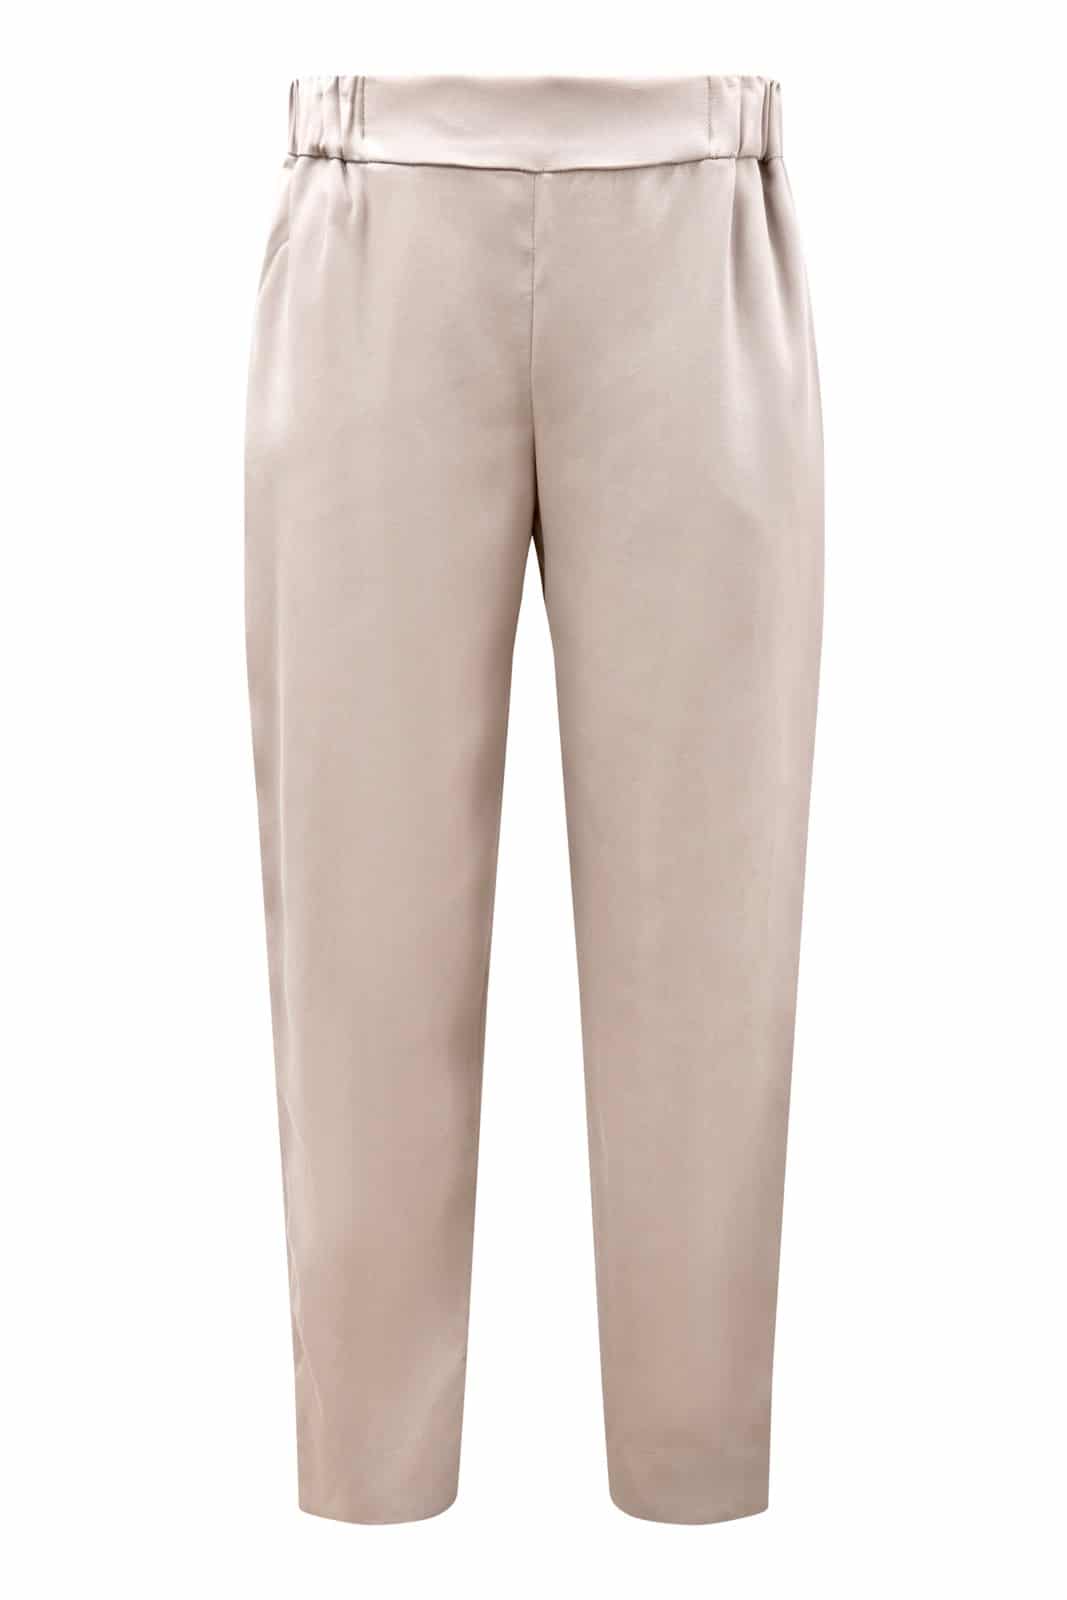 Pantalon confortable beige